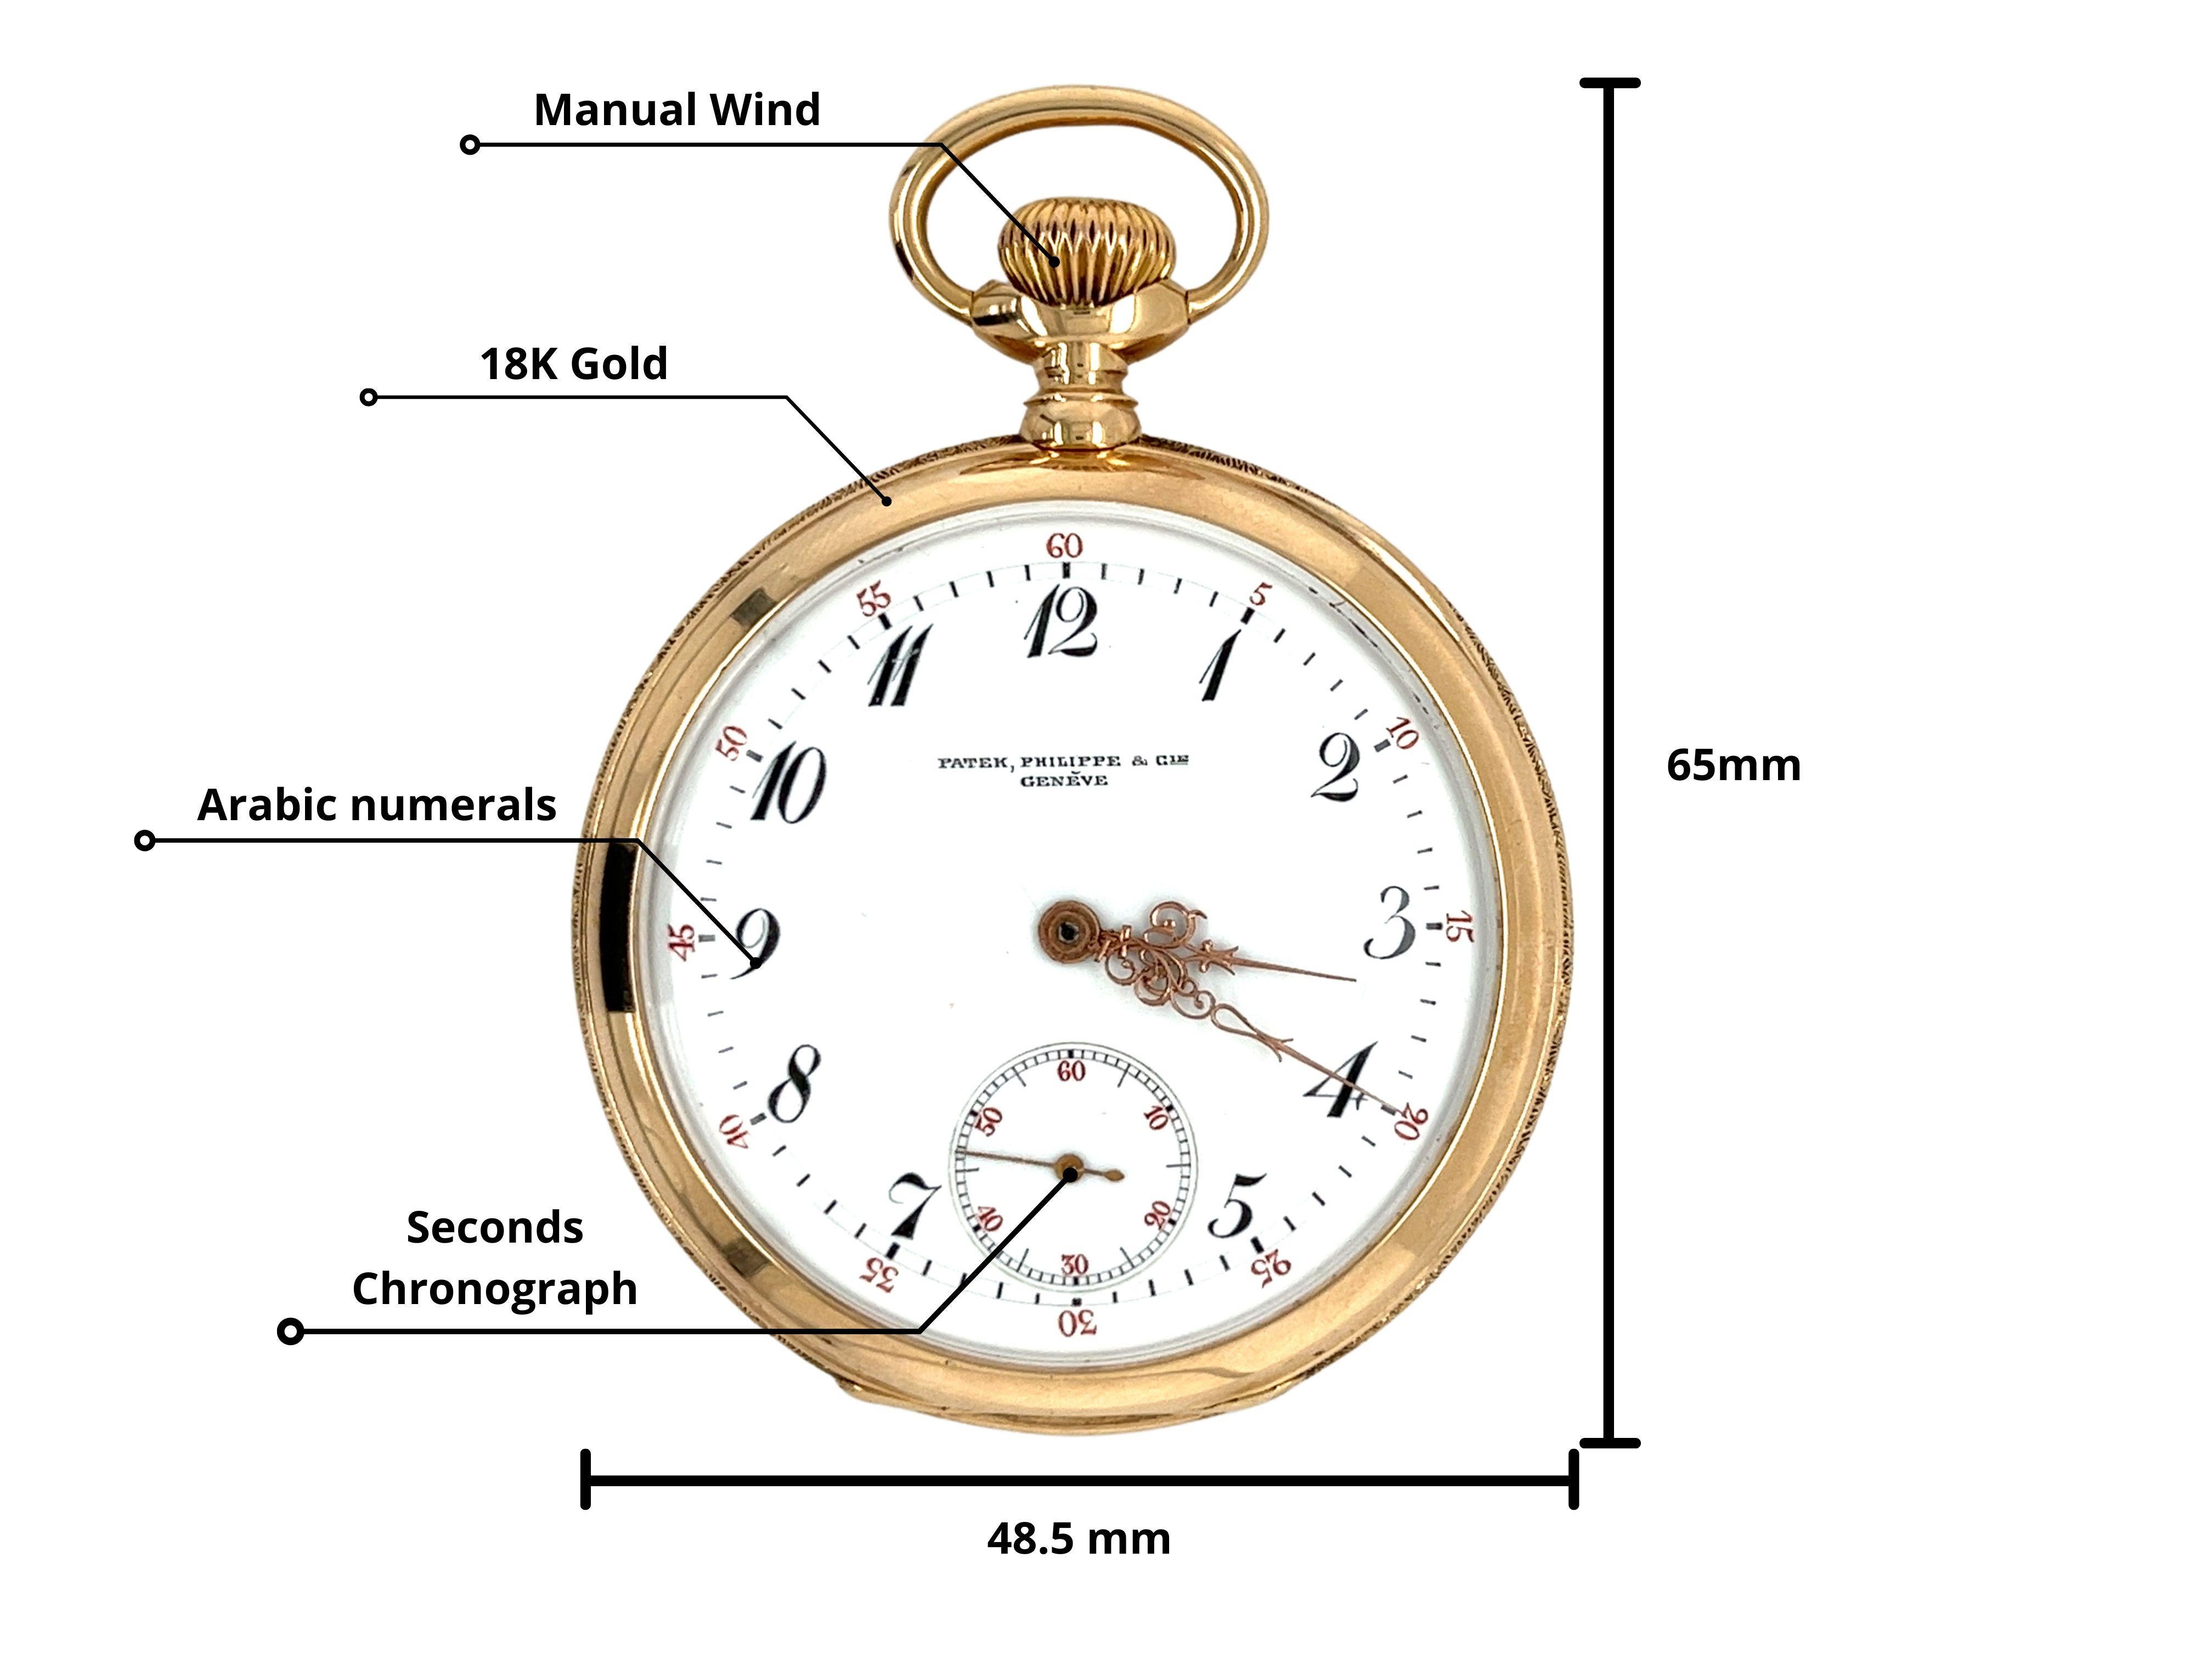 Ancienne montre de poche Patek Philippe Ref. 258729 montre de poche à cadran blanc en or jaune 18K. Elle est dotée d'un mouvement mécanique à remontage manuel, d'index en chiffres arabes, d'un verre saphir et d'un chronographe à secondes. En